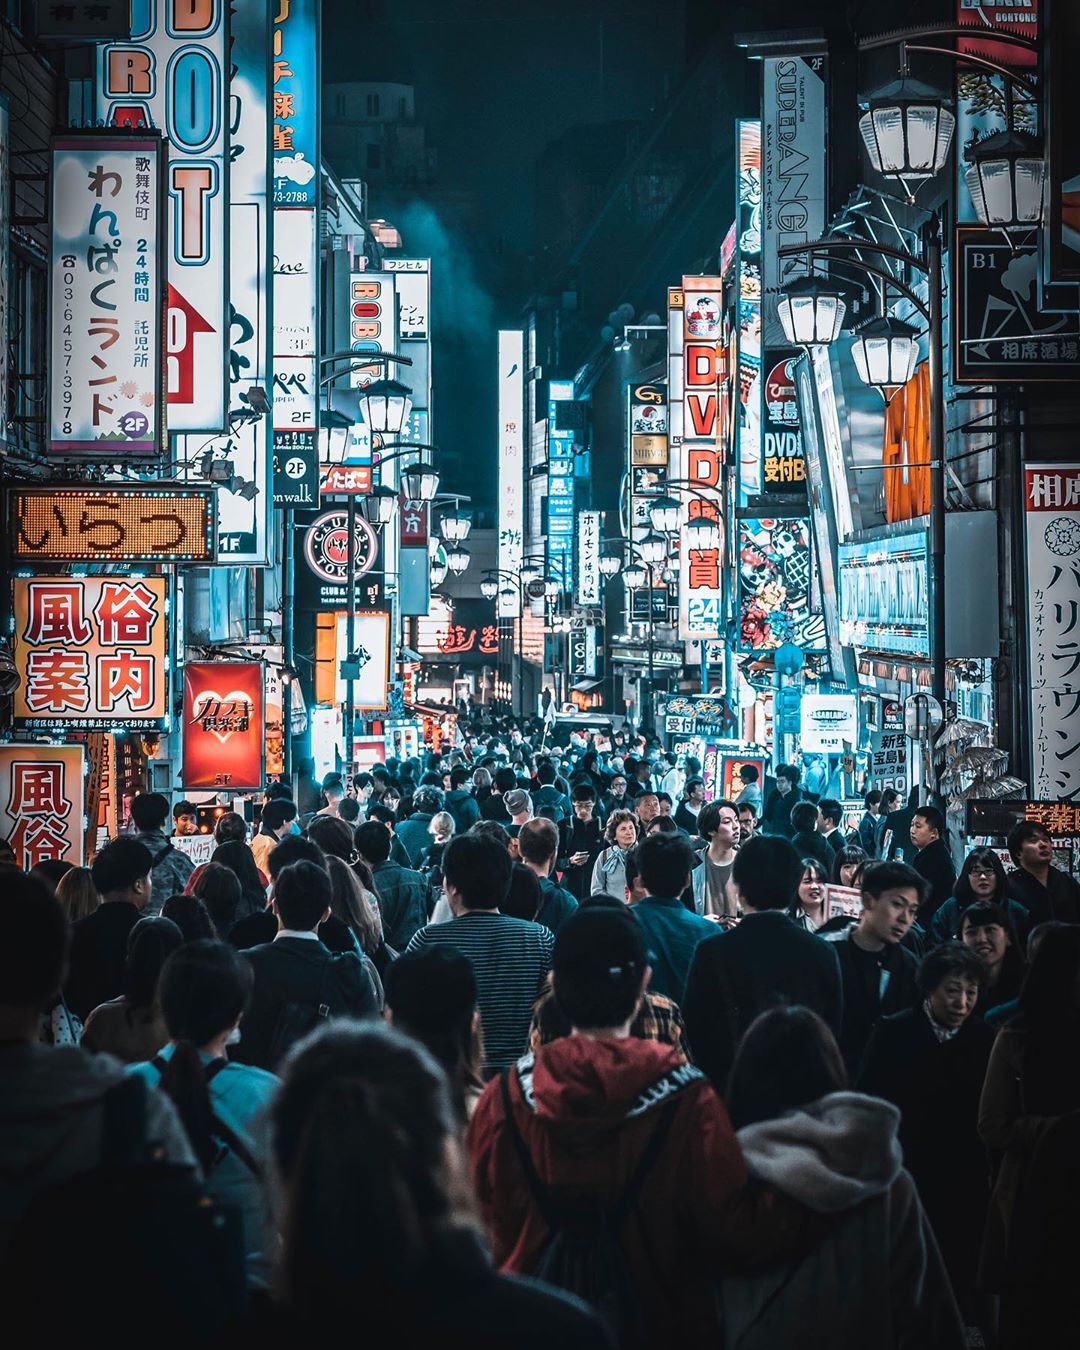 Волшебные ночные снимки японских улиц от Джуна Ямамото